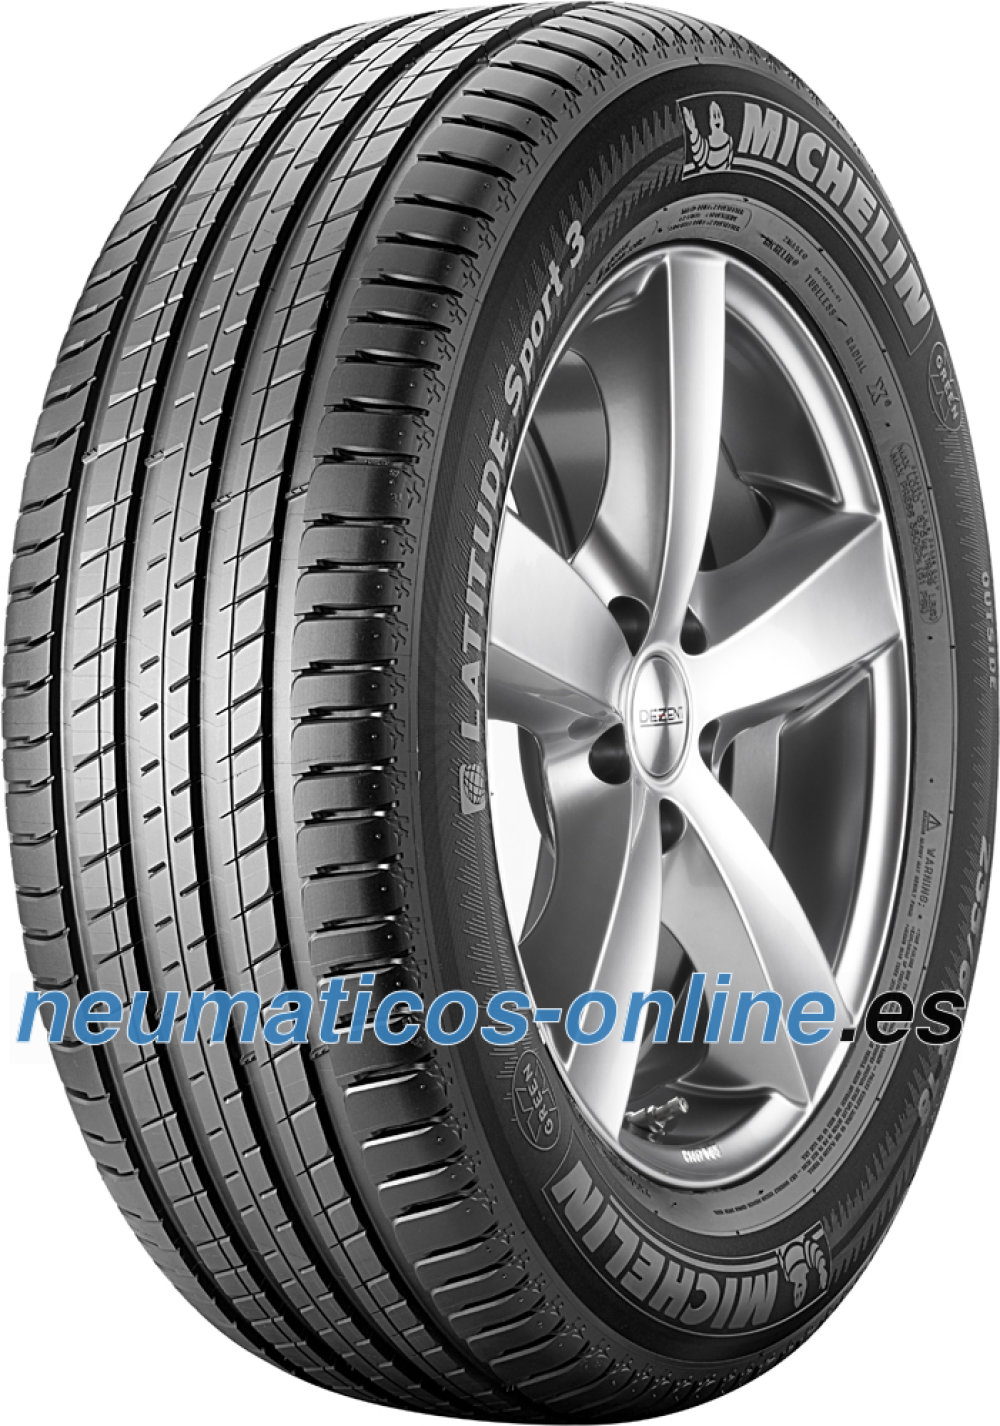 Off-Road Tyre 295/35/21 107Y Performance A/C/72dB MICHELIN LATITUDE SPORT 3 N1 XL 